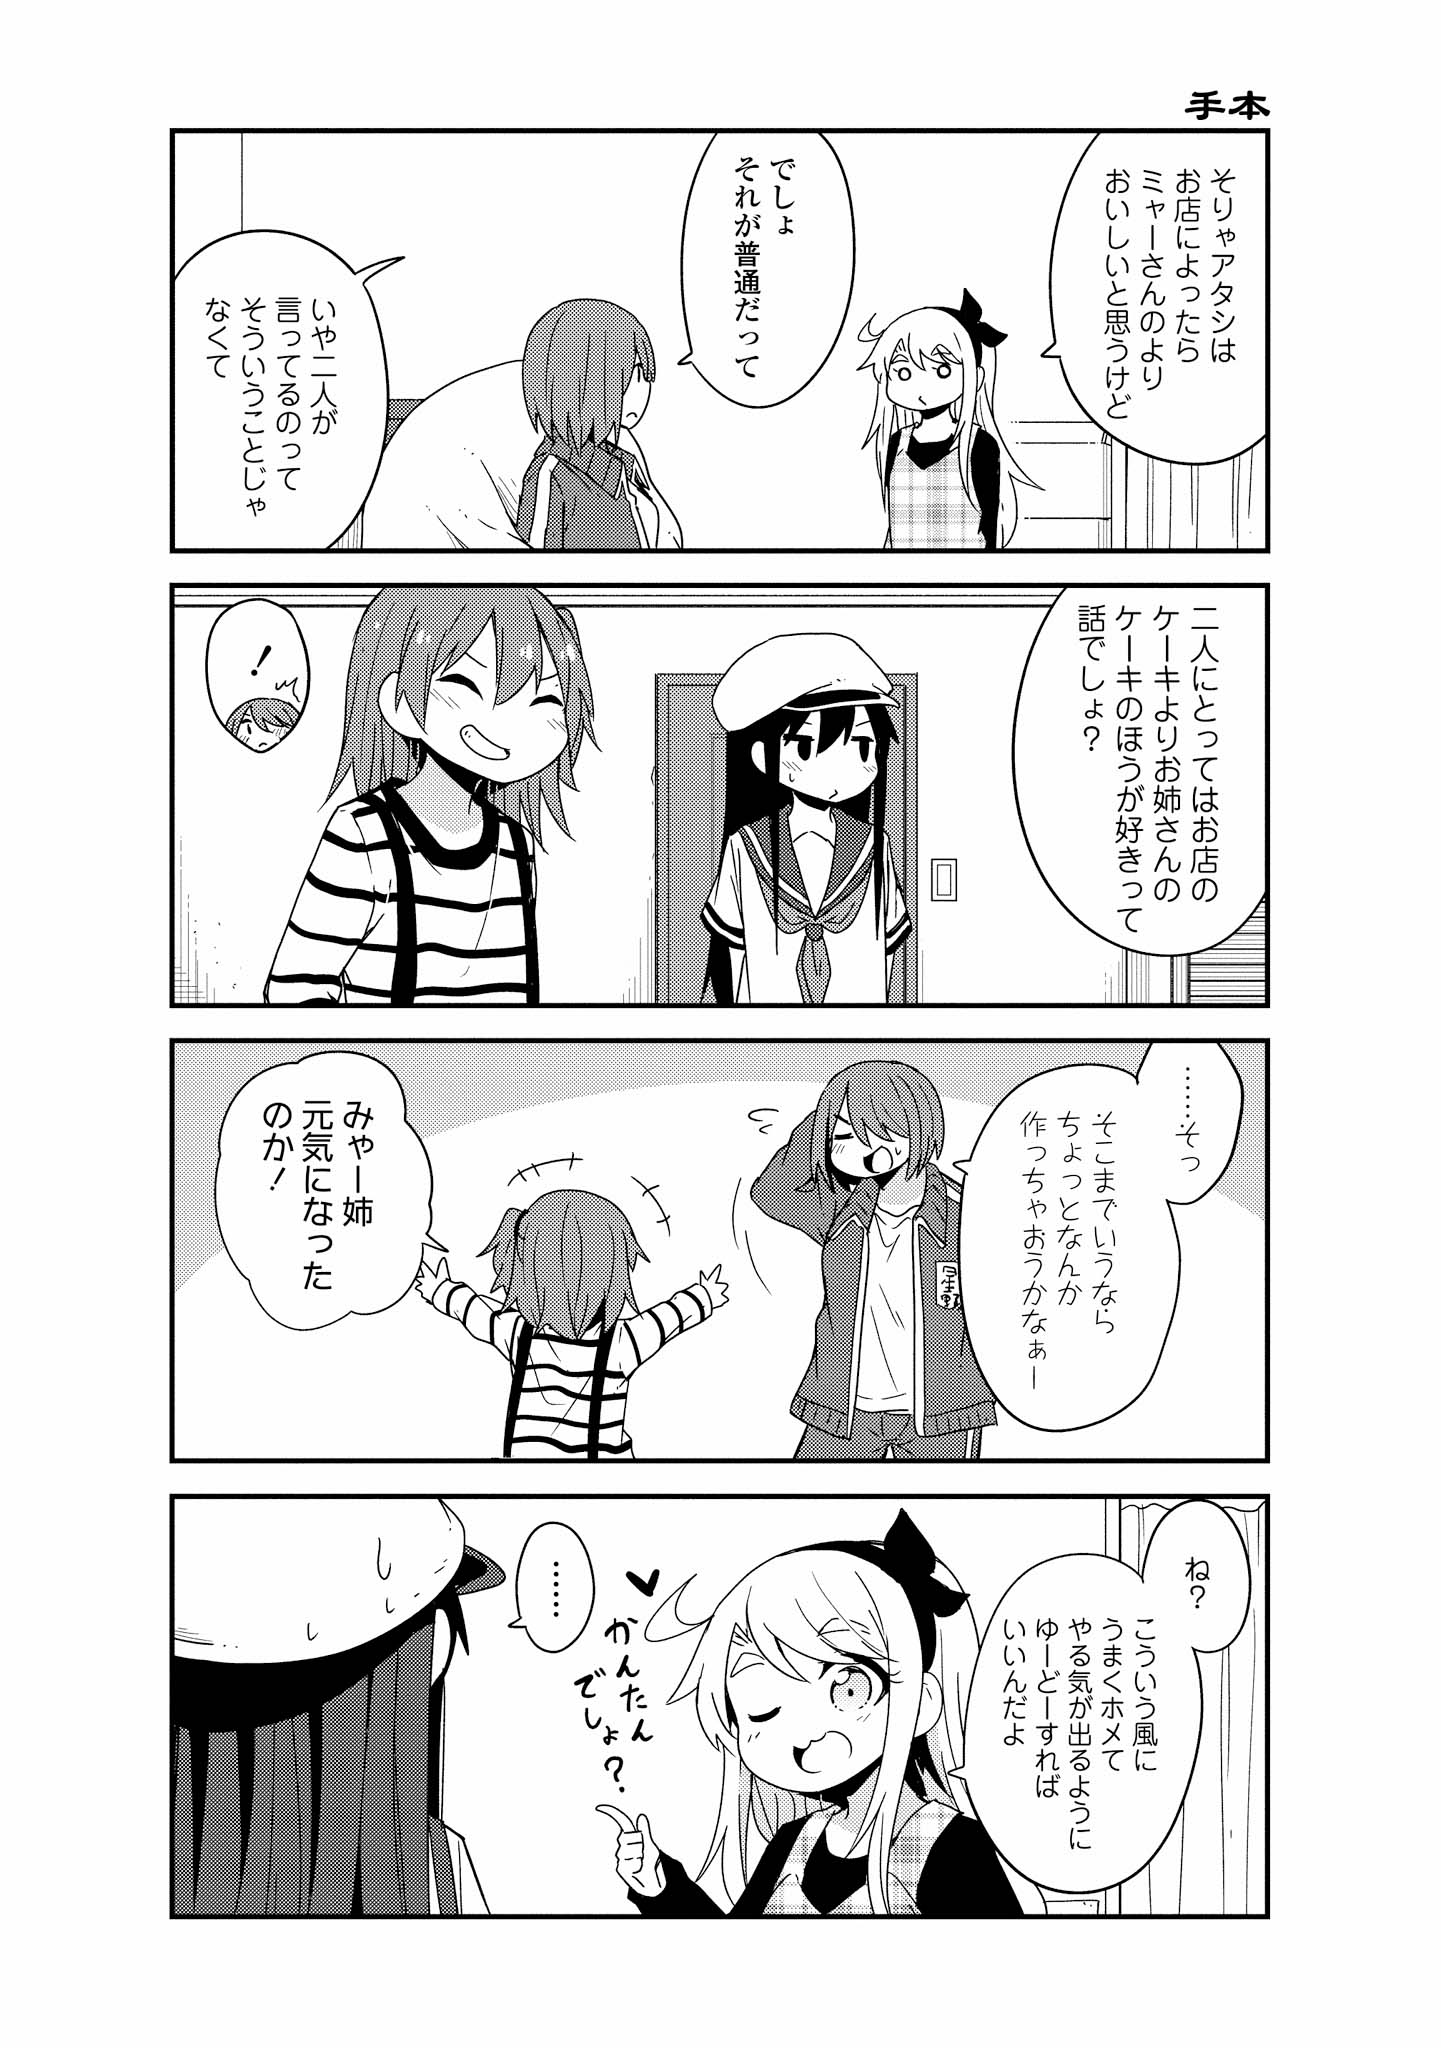 Watashi ni Tenshi ga Maiorita! - Chapter 37 - Page 16